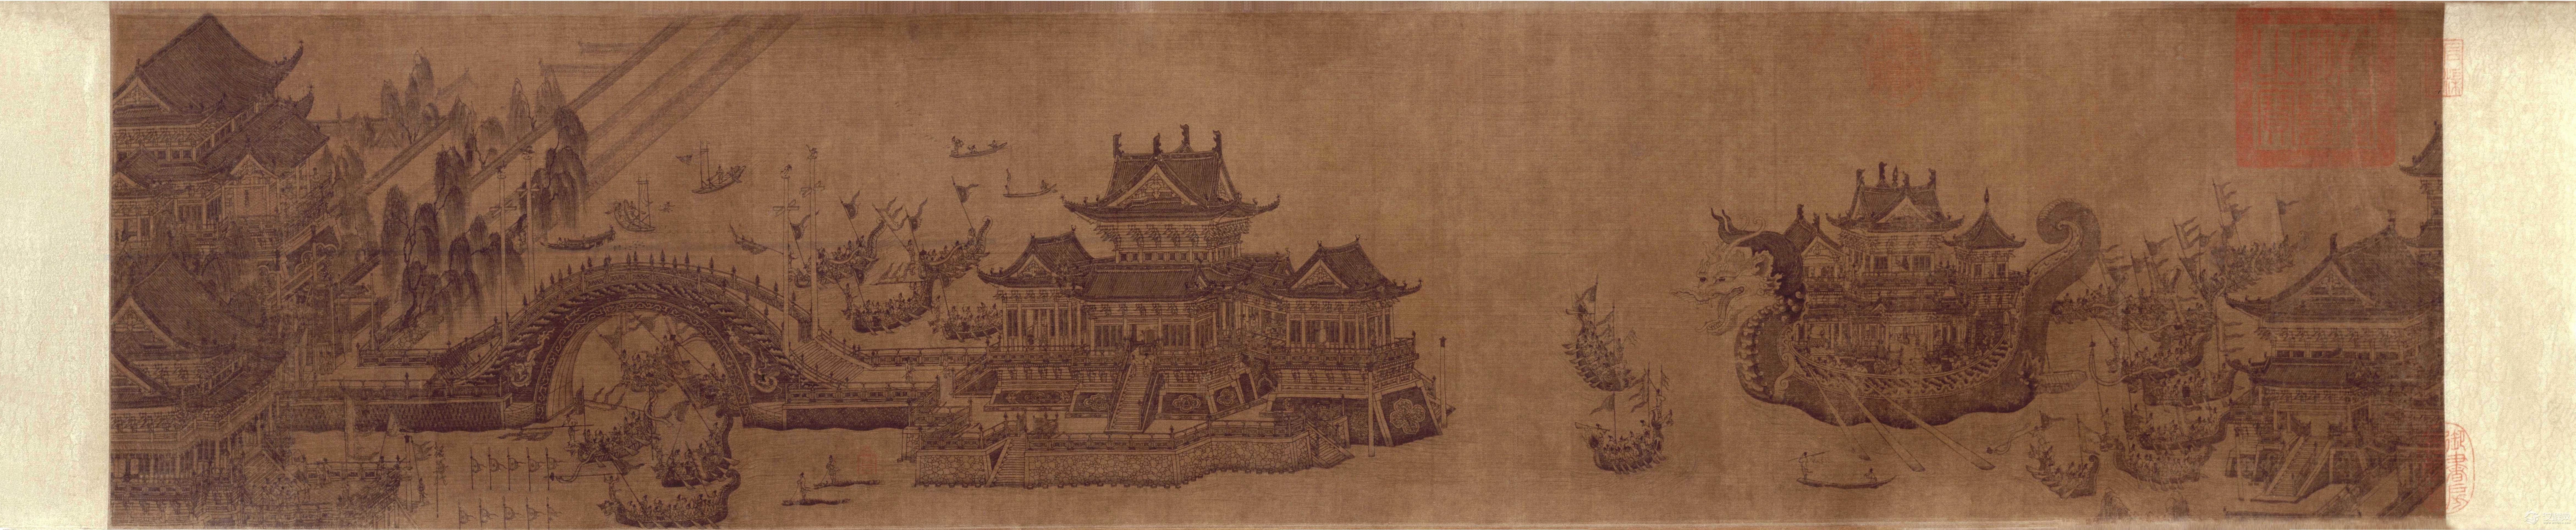 北京故宫博物院珍藏 元代绘画长卷